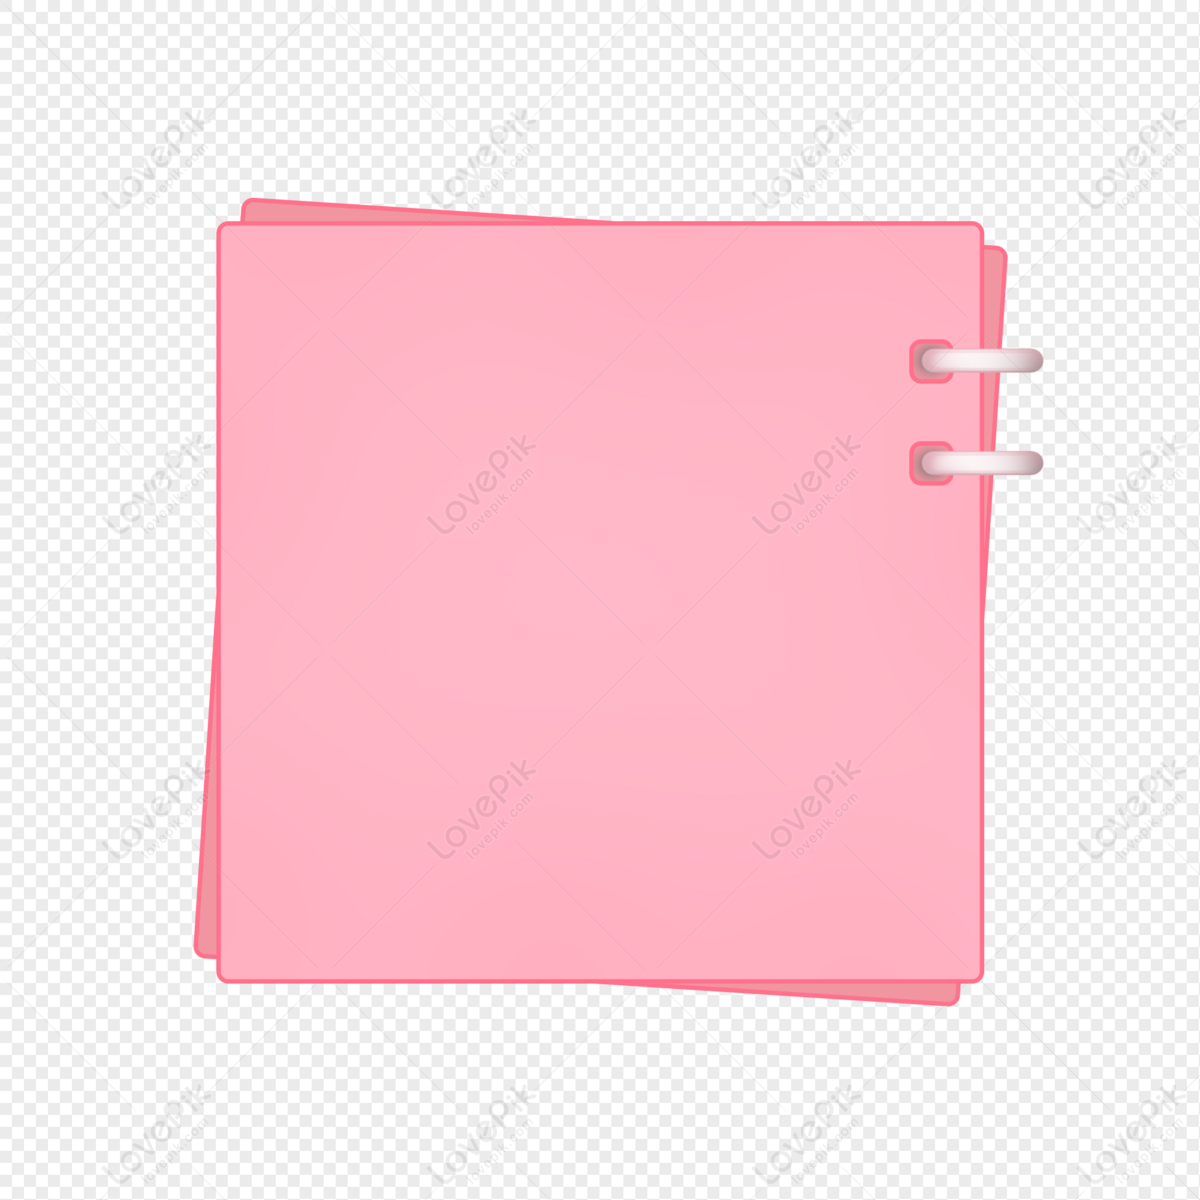 Pink border label: Hãy thêm chút màu sắc vào cuộc sống của bạn với những hình ảnh nhãn viền màu hồng nổi bật. Đây là sự lựa chọn tiện lợi và đẹp mắt để trang trí cho những tài liệu hay sản phẩm của bạn. Xem ngay để chọn cho mình những mẫu ưng ý!